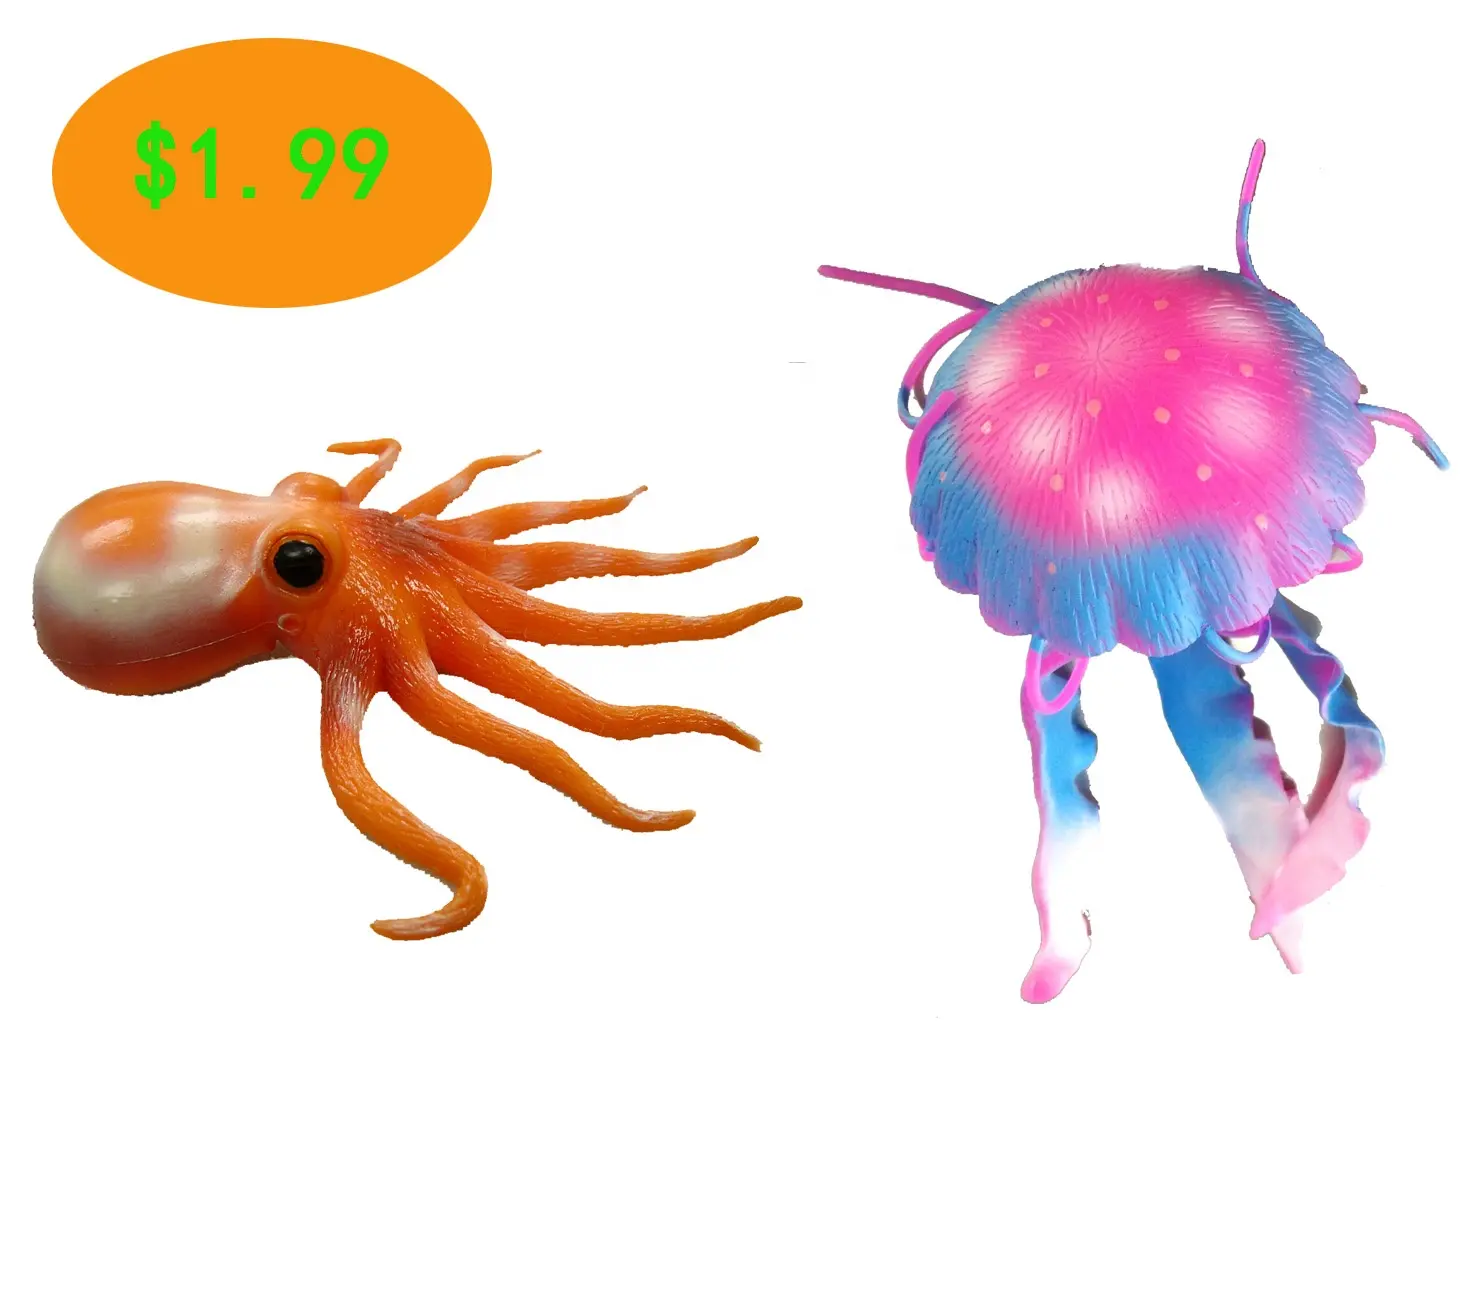 Unterhaltung interaktive ozean octopus quallen $1,99 einzelhandel gruppe spielzeug